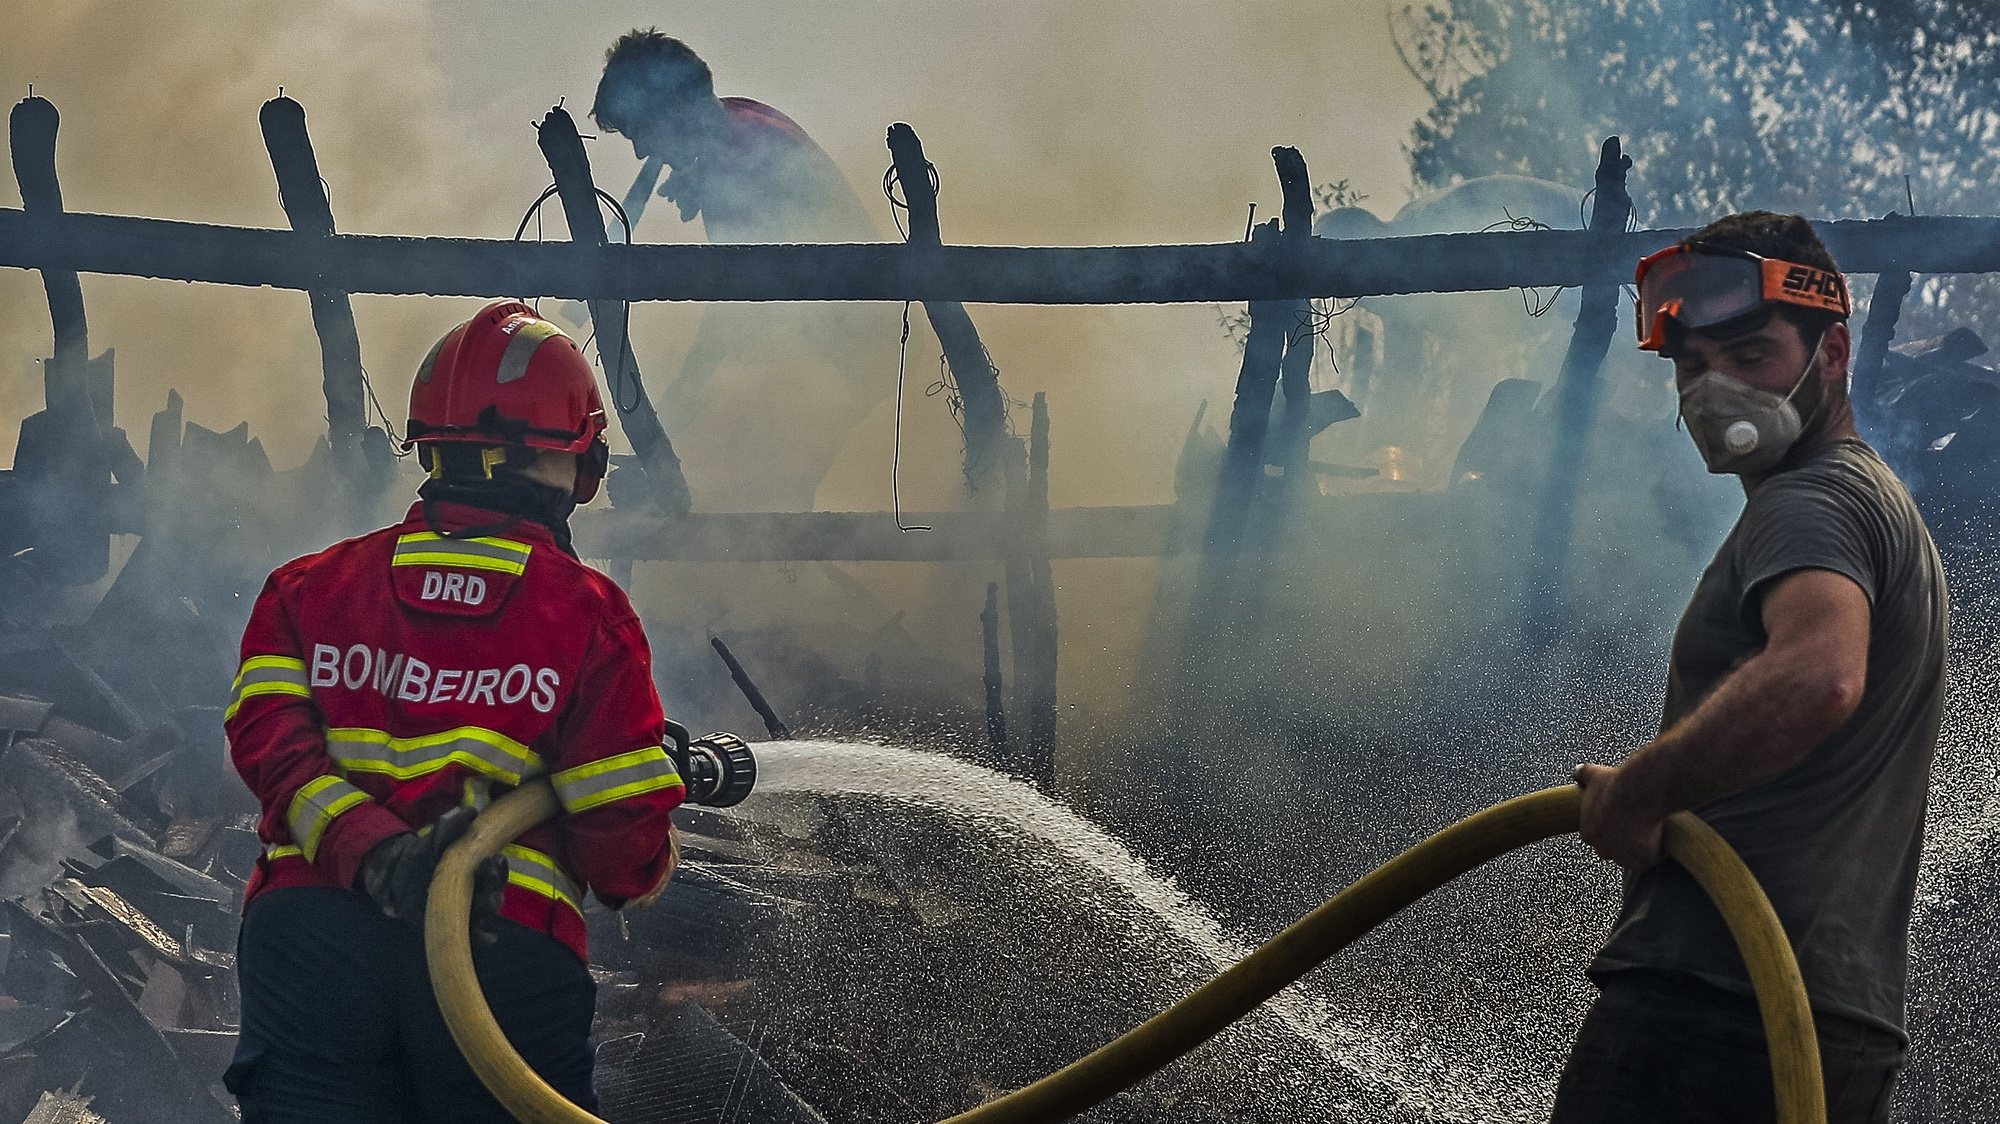 Bombeiros combatem o fogo que destruiu um barracão de lenha junto a uma casa em Macieira, durante o incêndio que começou em Abiul, Pombal, na passada sexta-feira, Macieira, Alvaiázere, 14 de julho de 2022. PAULO NOVAIS/LUSA